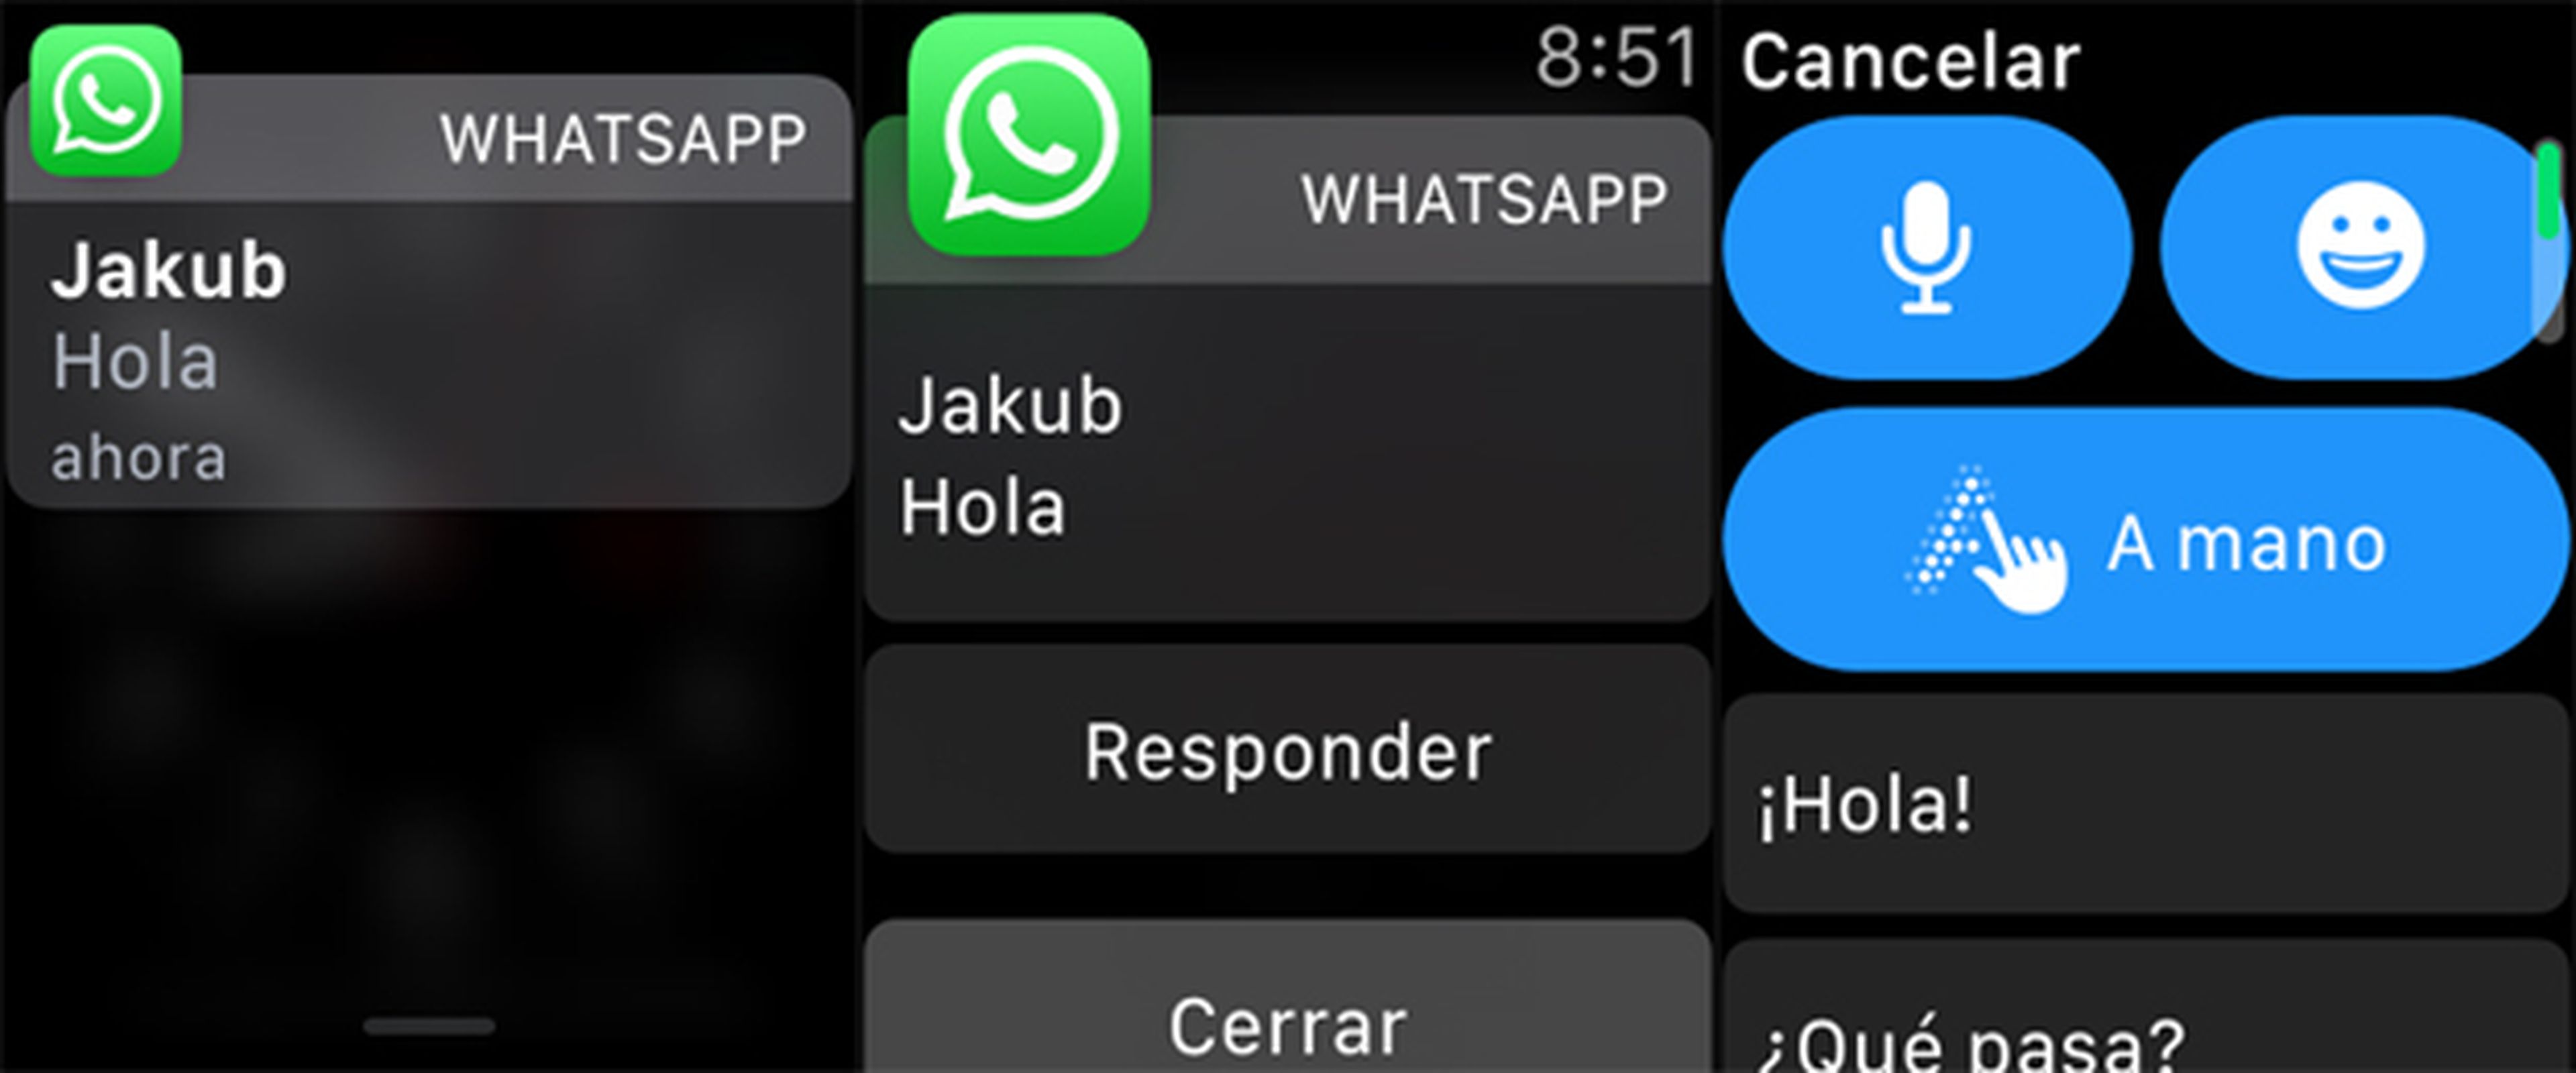 En el Apple Watch Series 3 puedes contestar a los WhatsApp